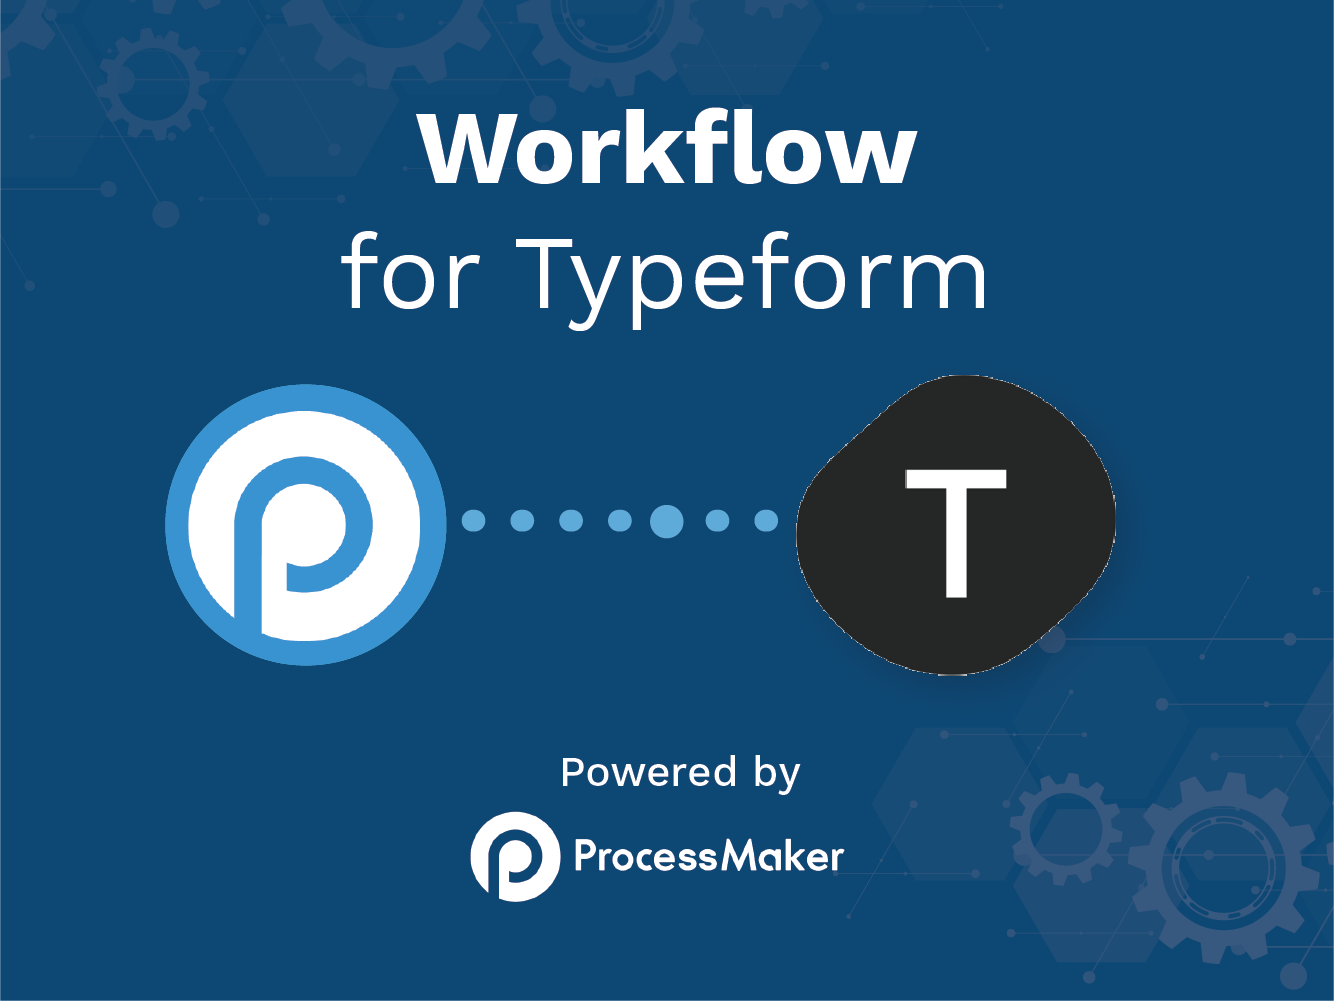 ProcessMaker annonce une nouvelle intégration avec Typeform pour